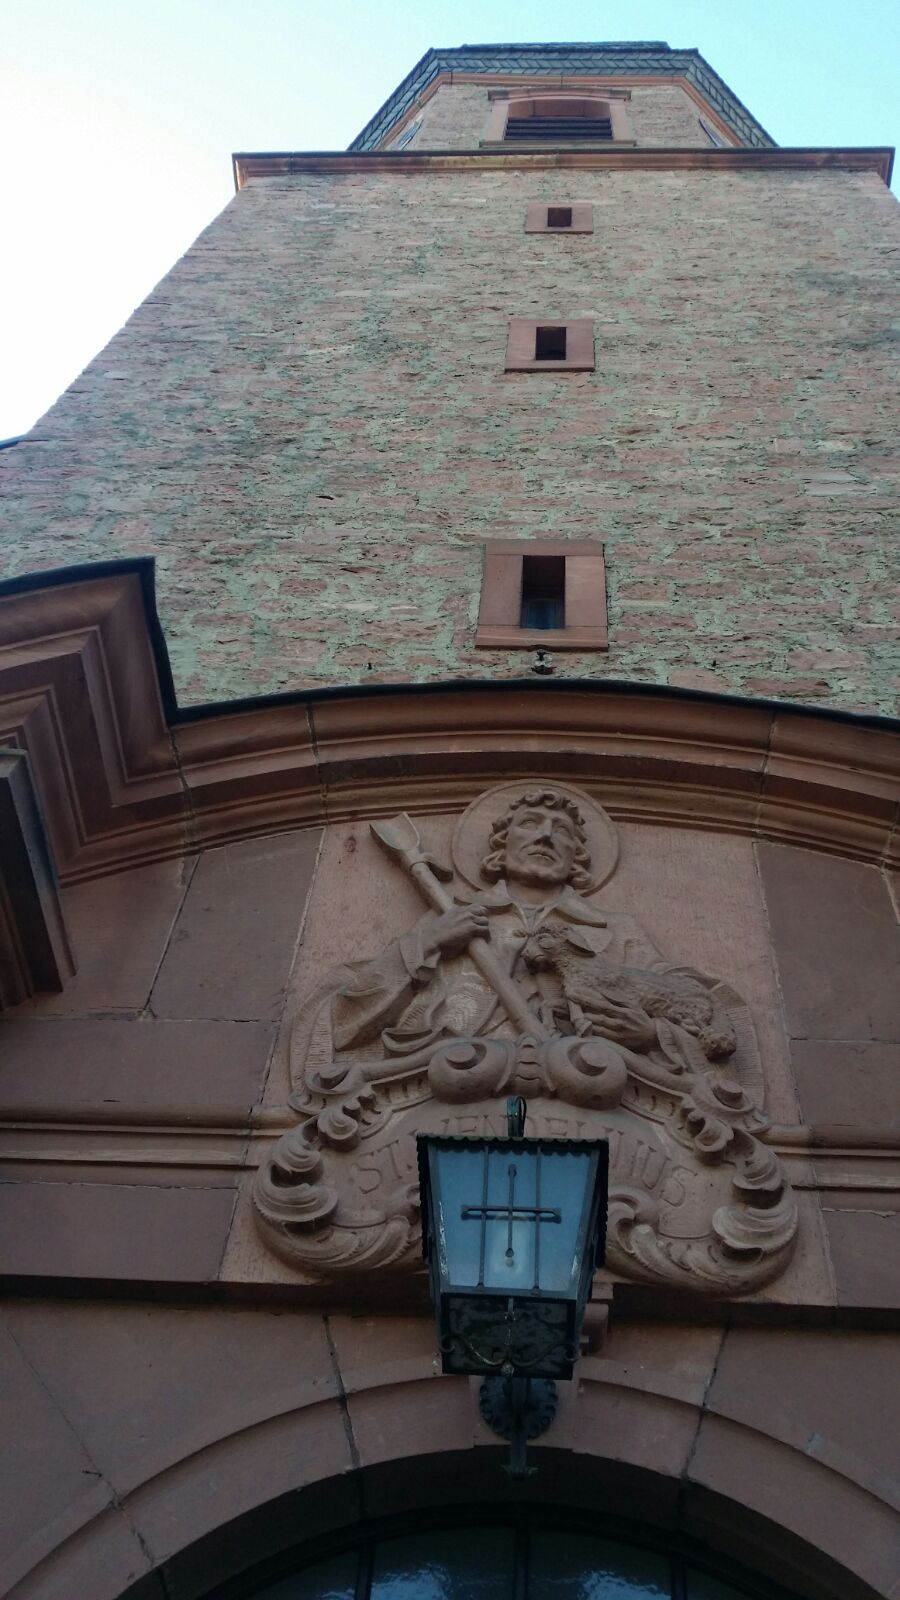 Eingangsportal der Kirche St. Wendelinus, Ortsteil Langenprozelten.